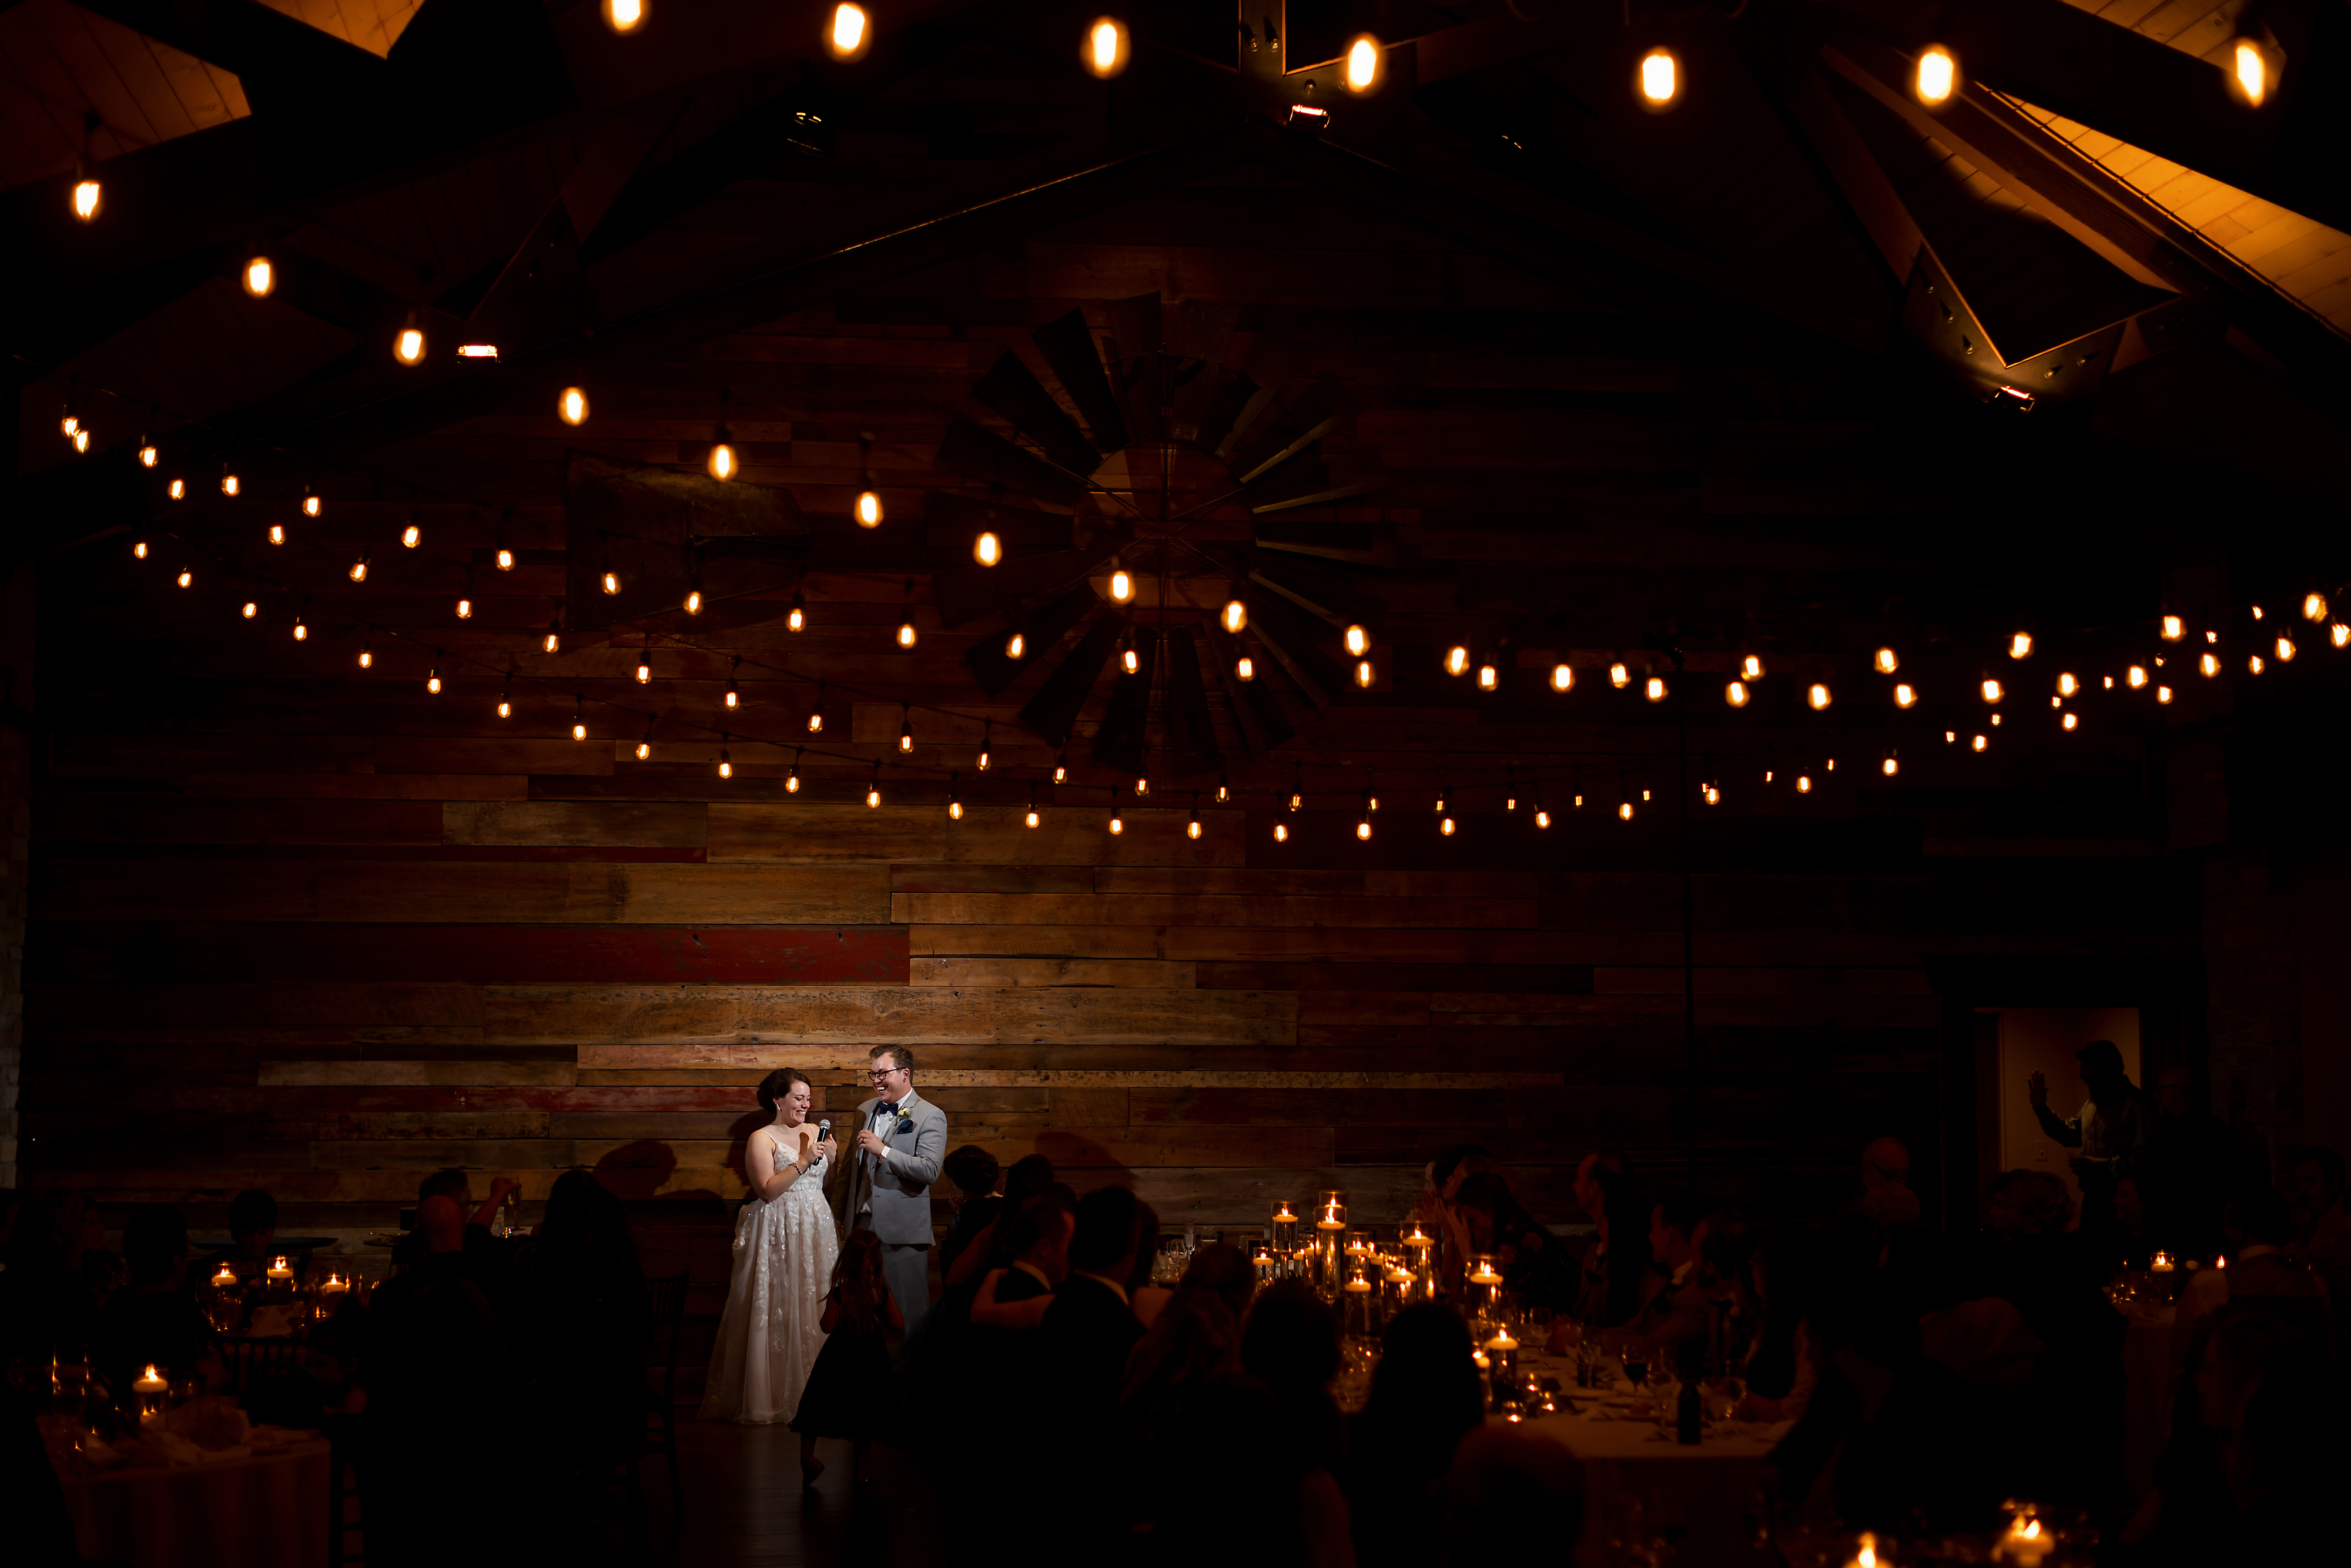 Wedding reception photos at Fishermen's Inn in Elburn Illinois